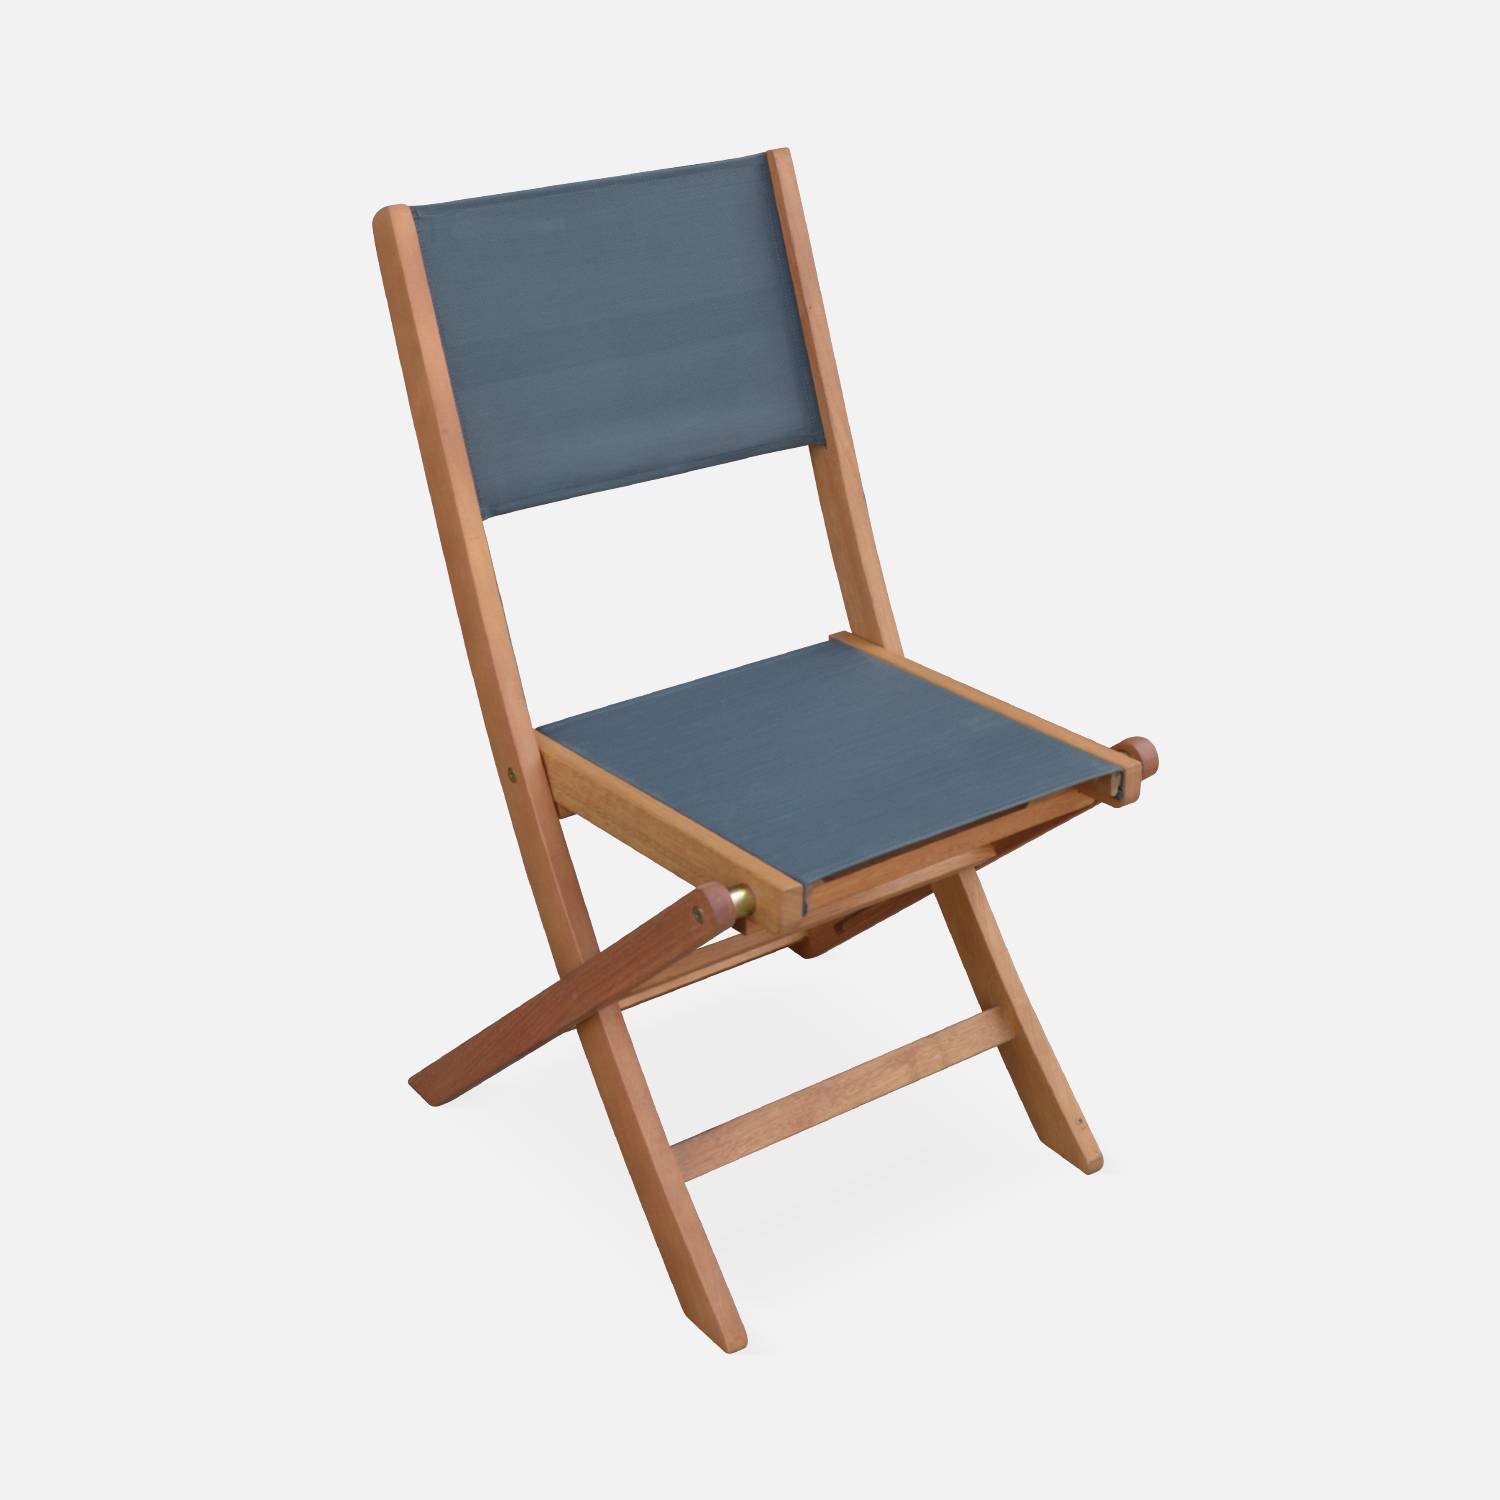 Sedie da giardino, in legno e textilene - modello: Almeria, colore: Antracite - 2 sedie pieghevoli in legno di eucalipto FSC oliato e textilene Photo4